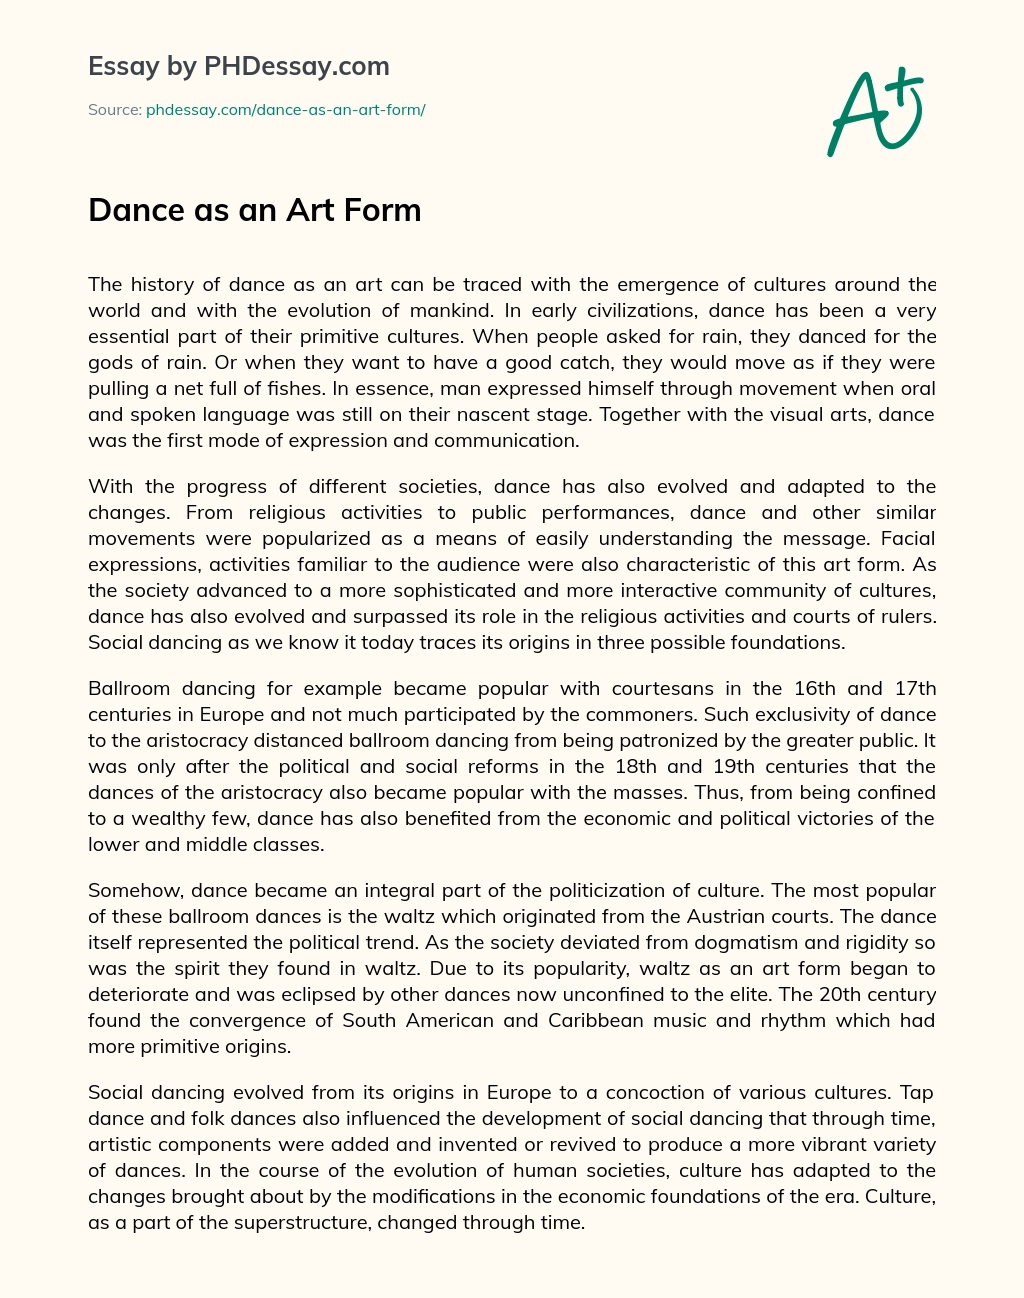 Dance as an Art Form essay